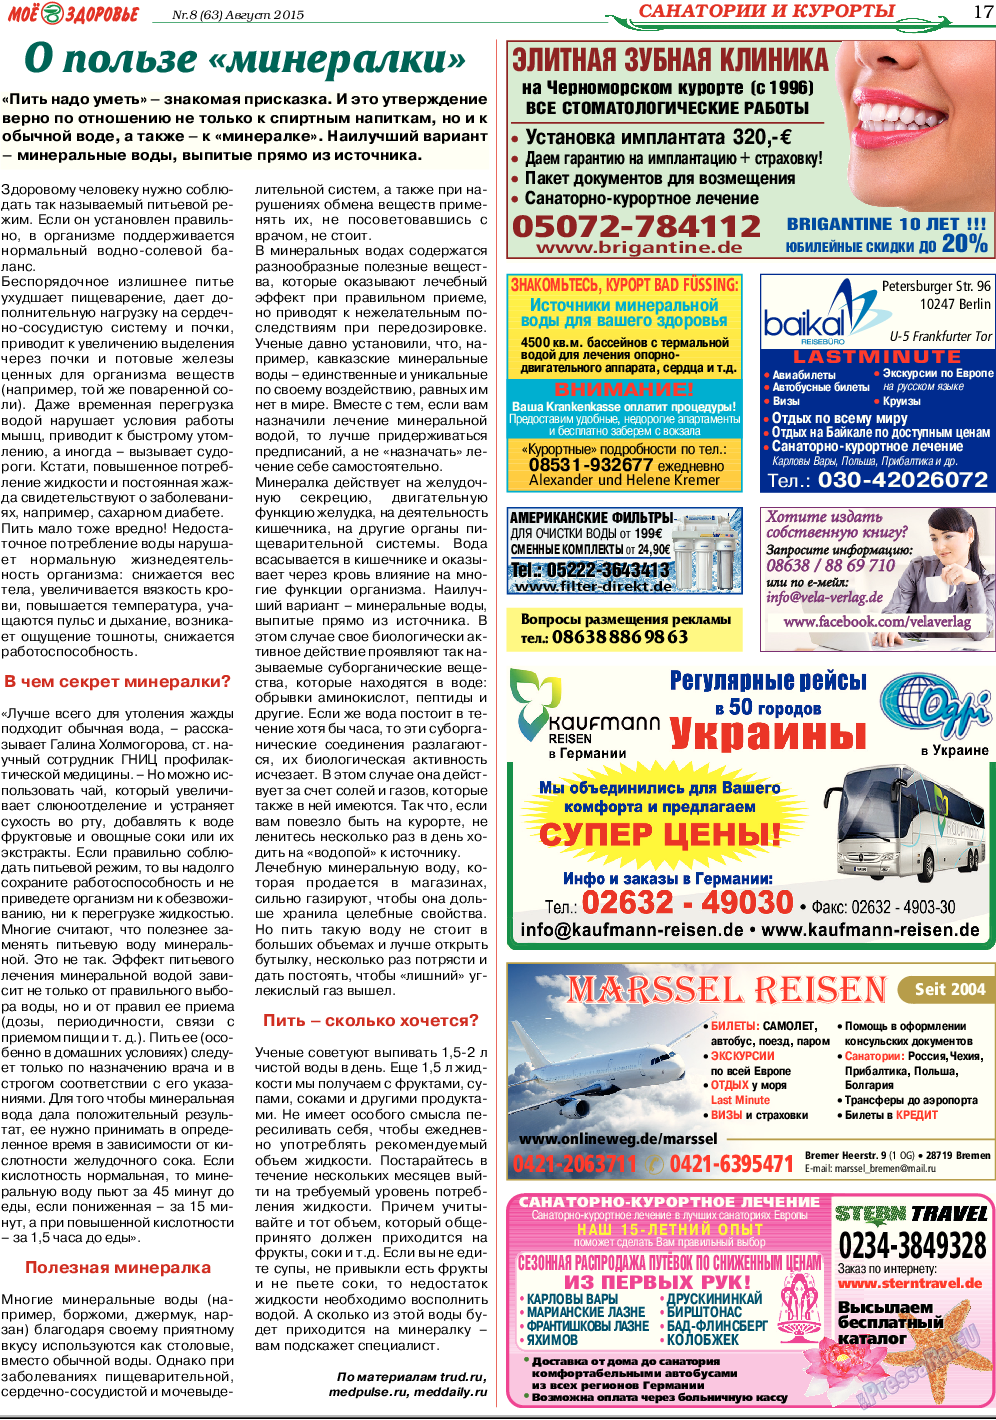 Кругозор, газета. 2015 №8 стр.17